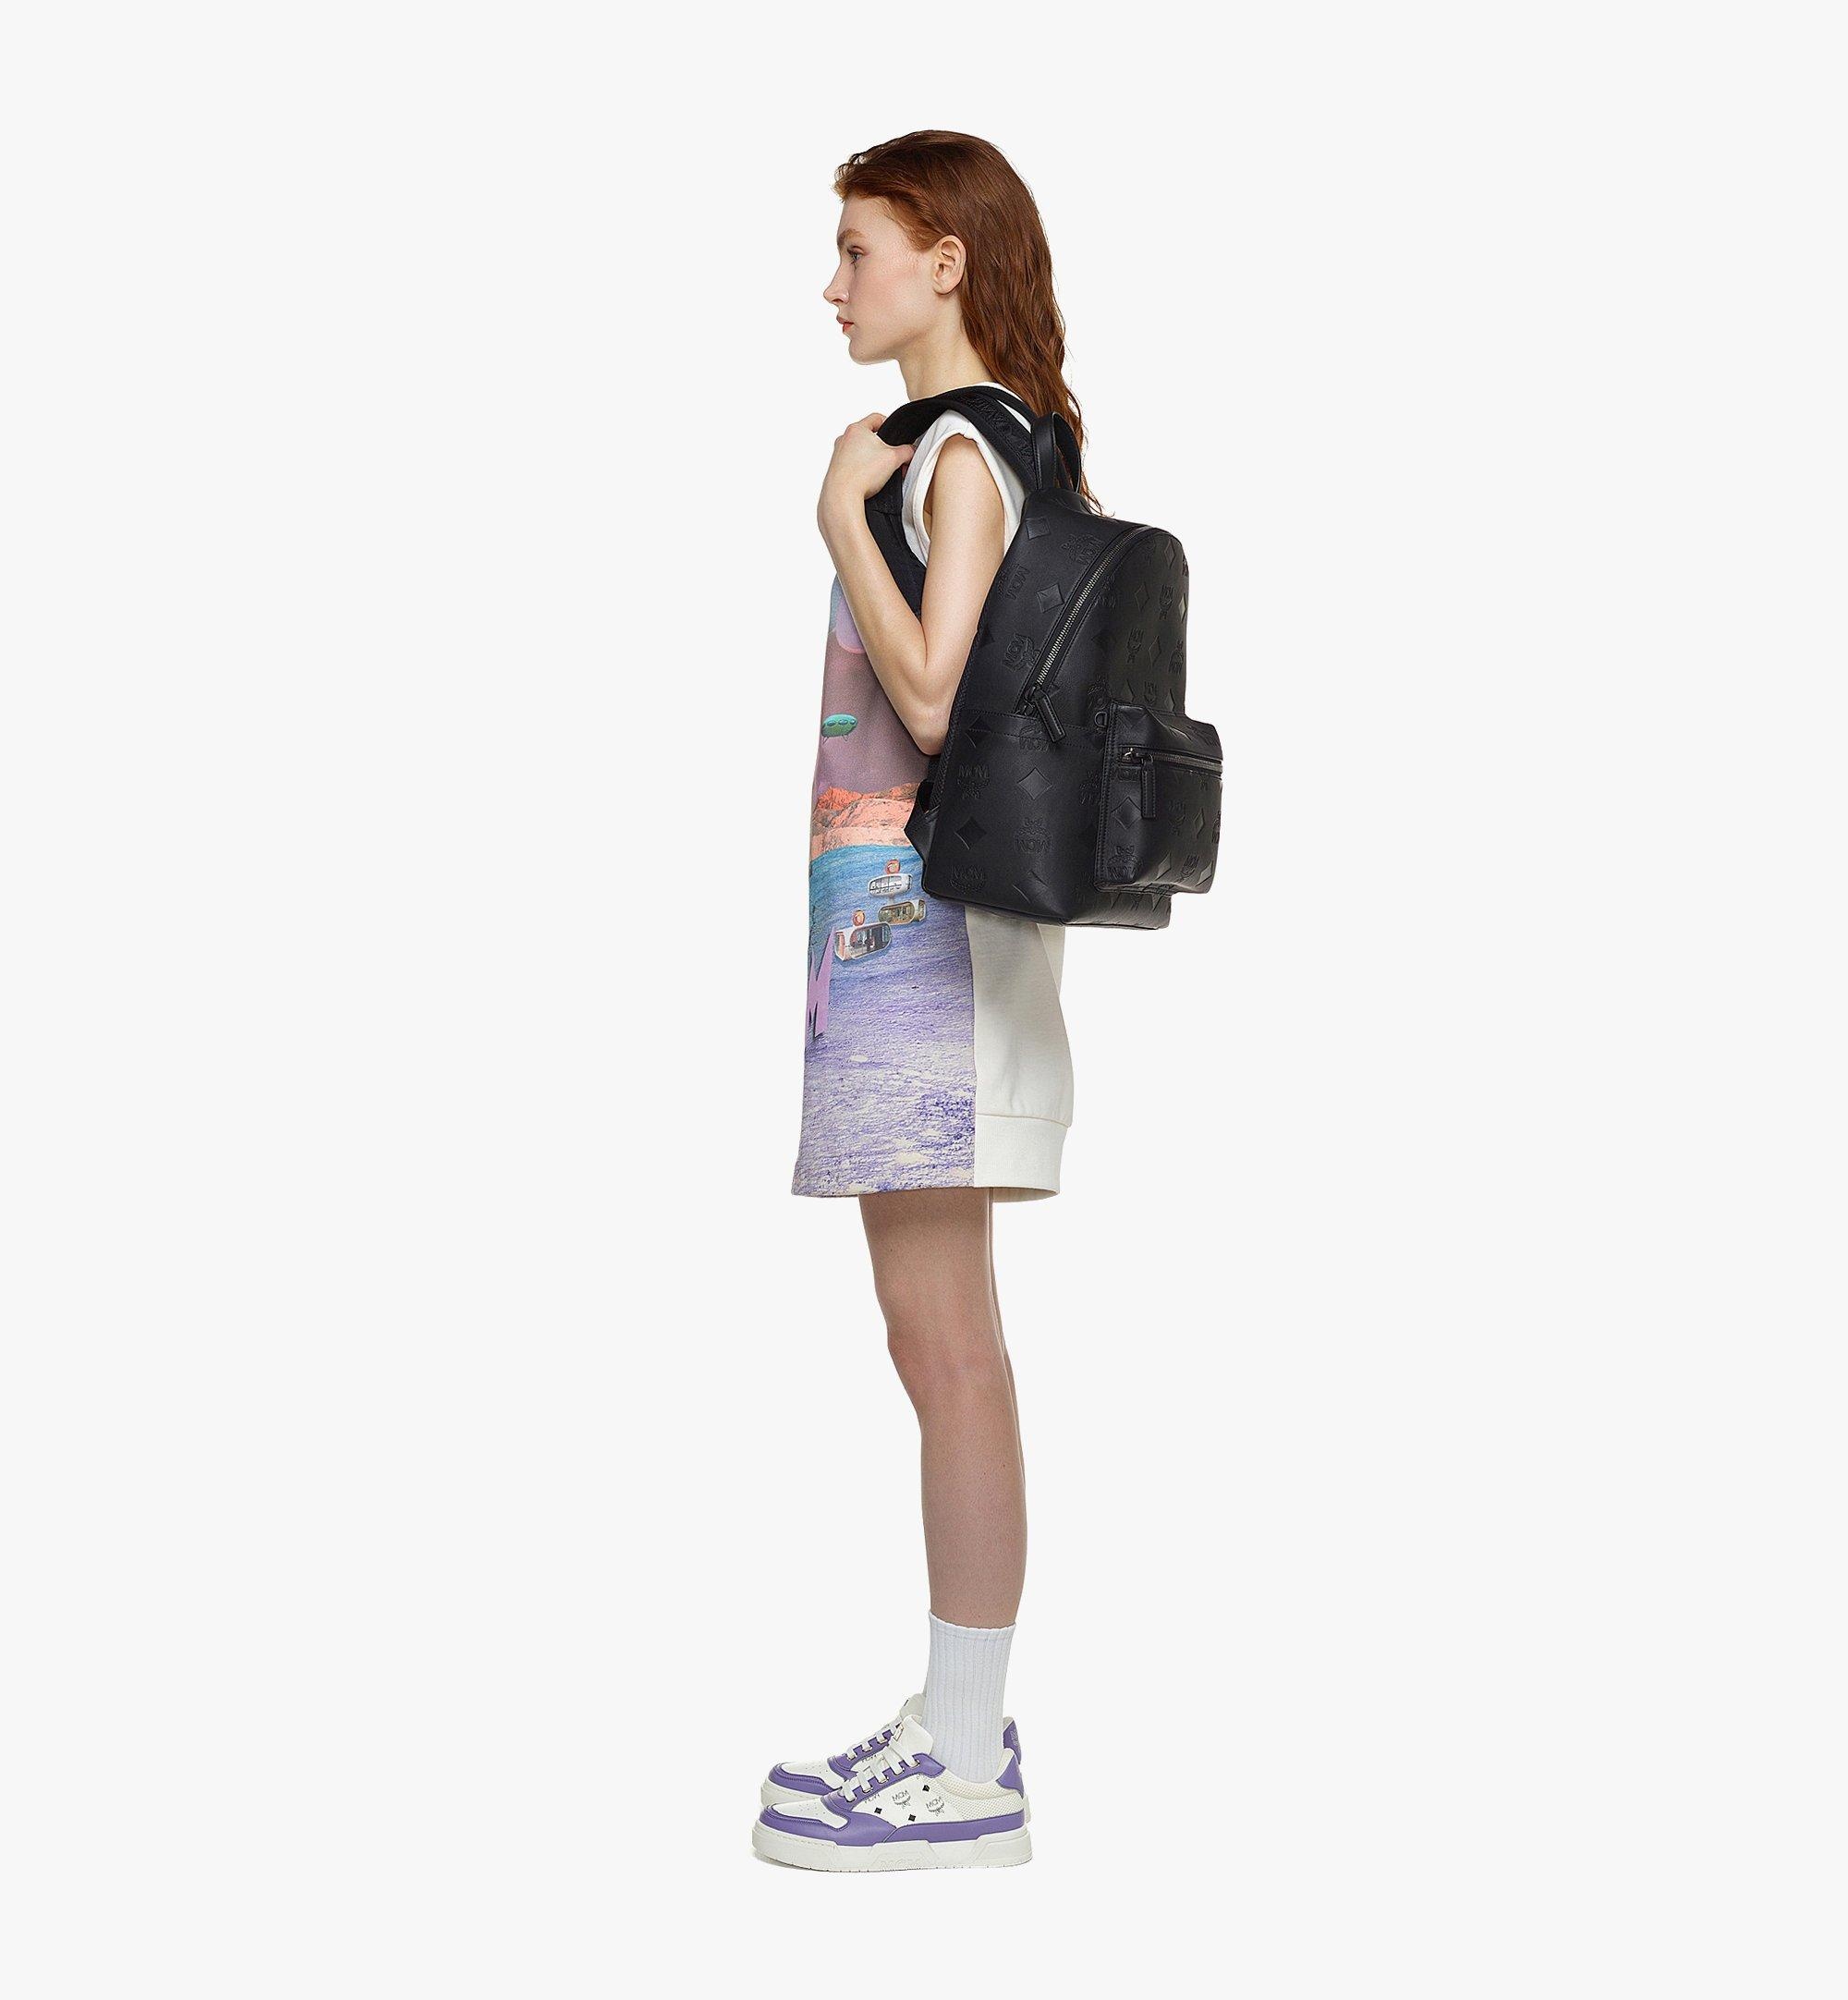 Mcm Brandenburg Backpack in Cubic Jacquard Nylon Black Eco Nylon